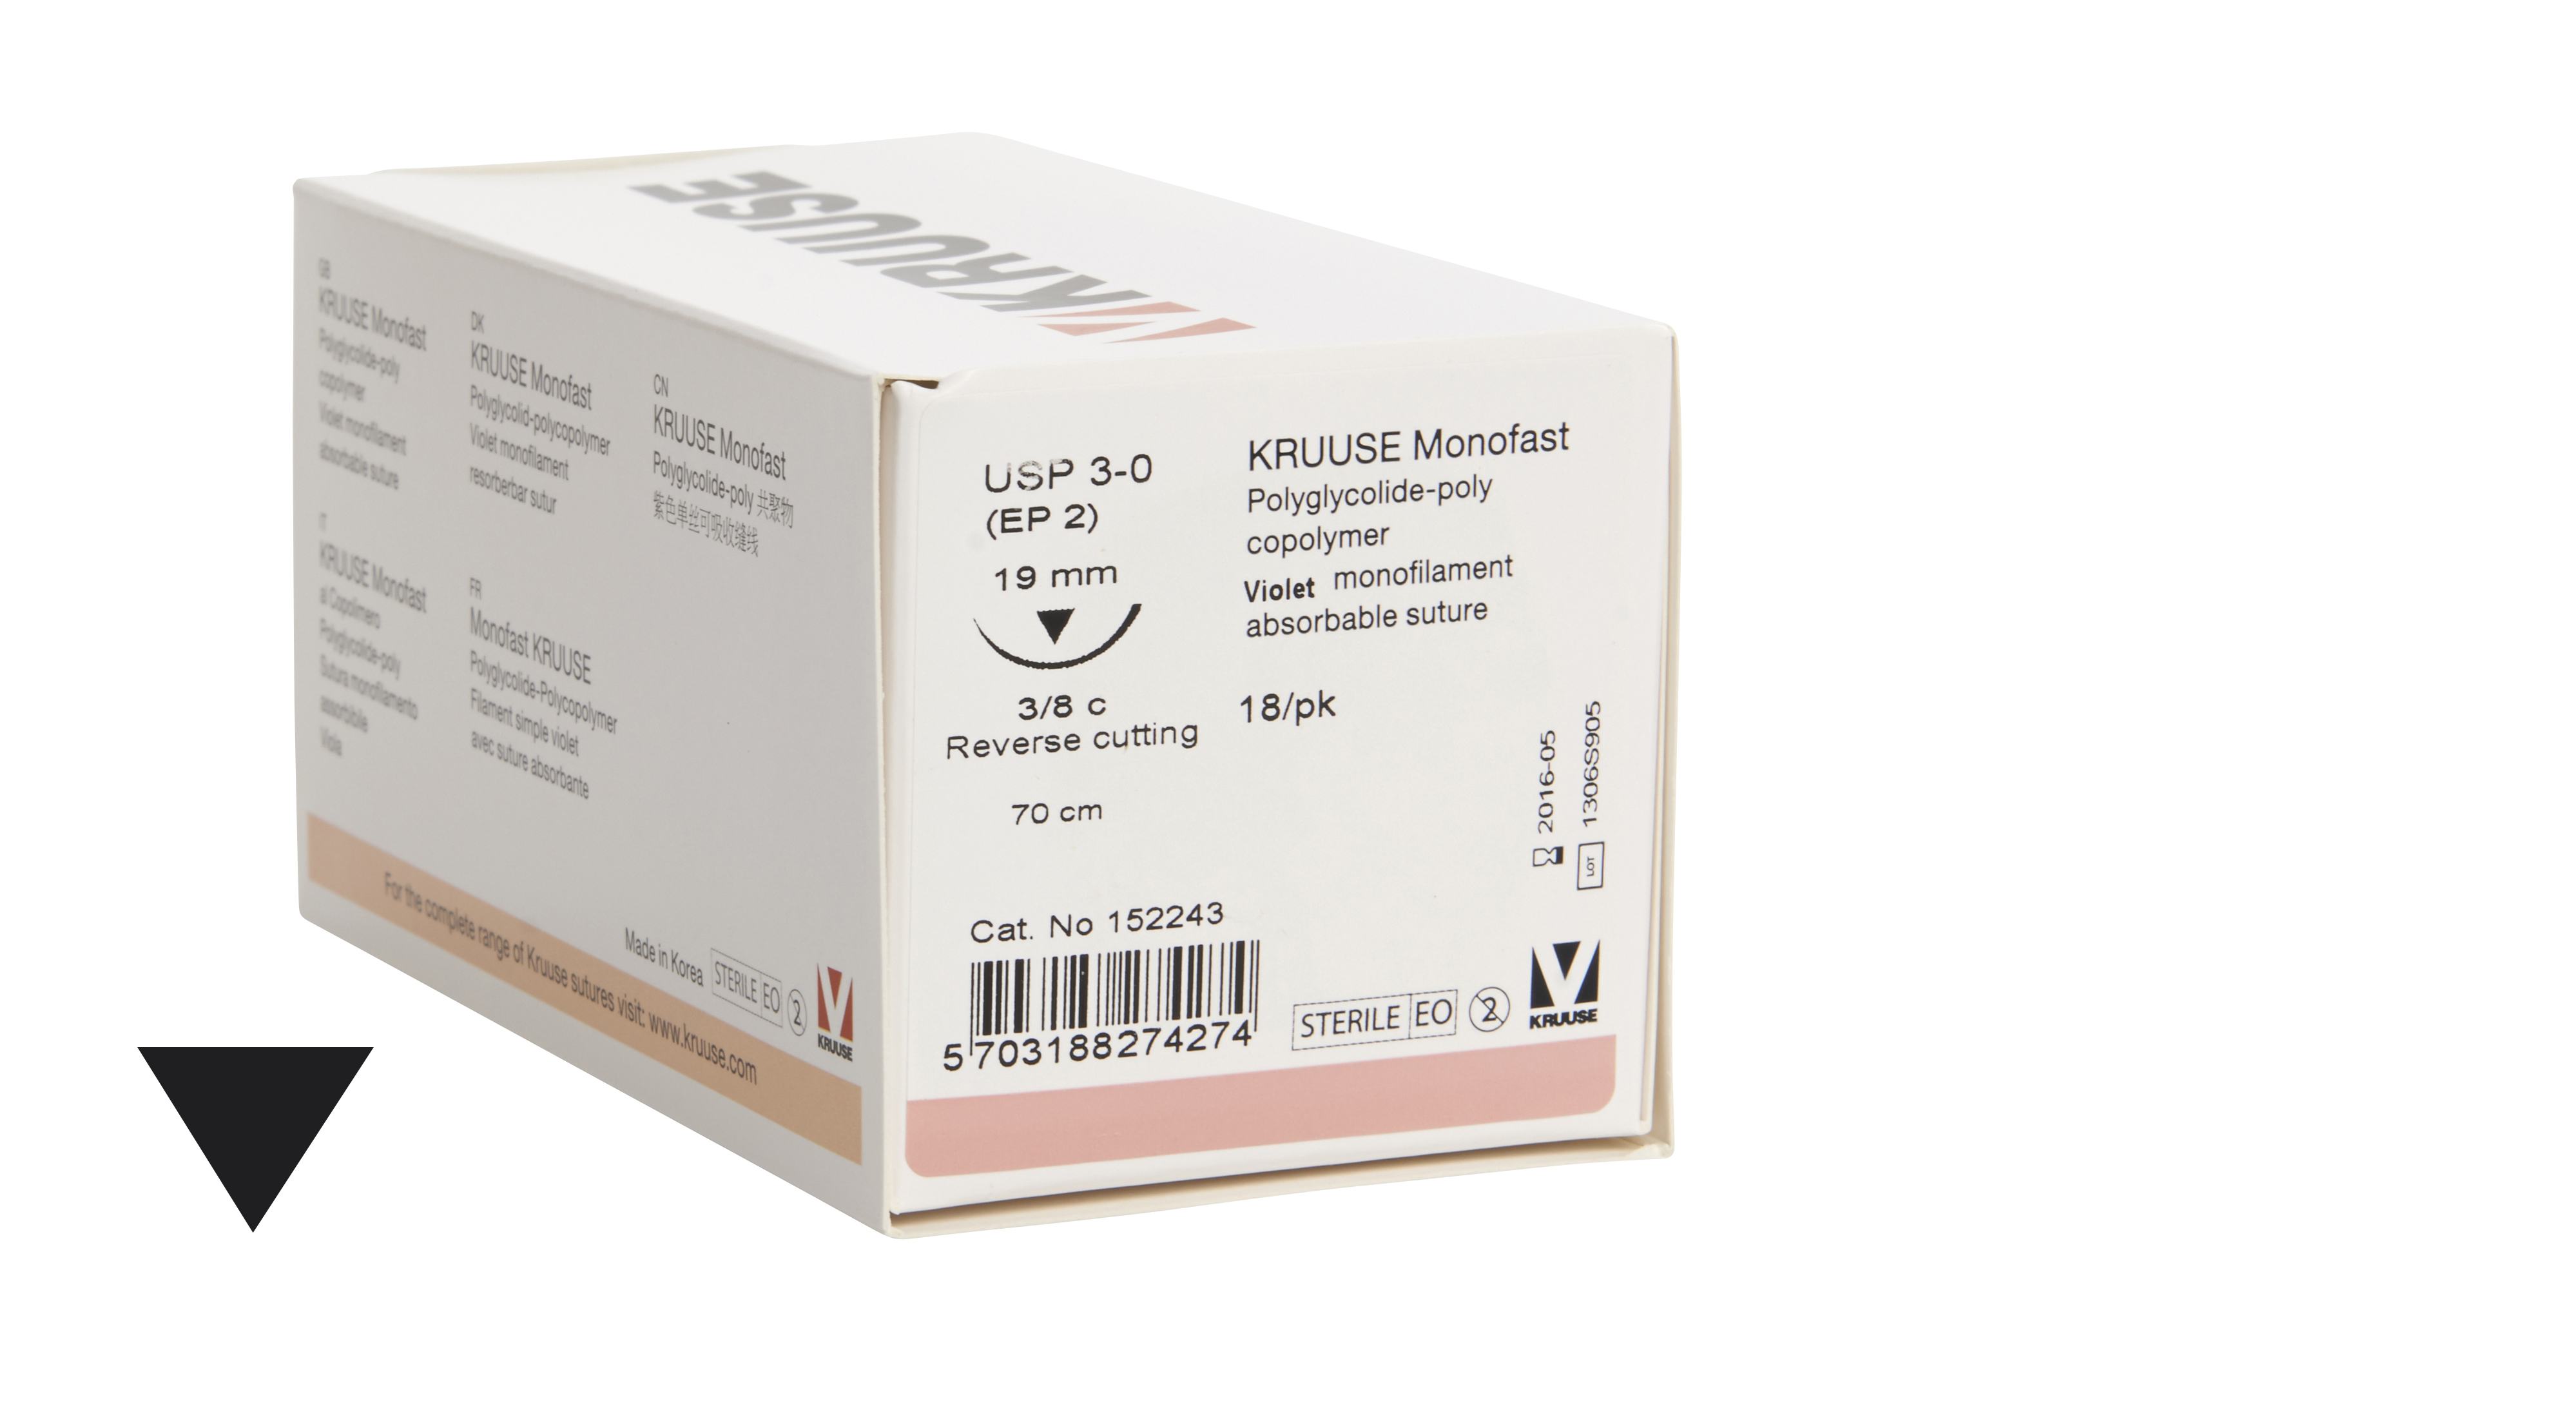 KRUUSE Monofast Suture, USP 3-0, 70 cm, purple, 19 mm needle, 3/8 C, RC, 18/pk